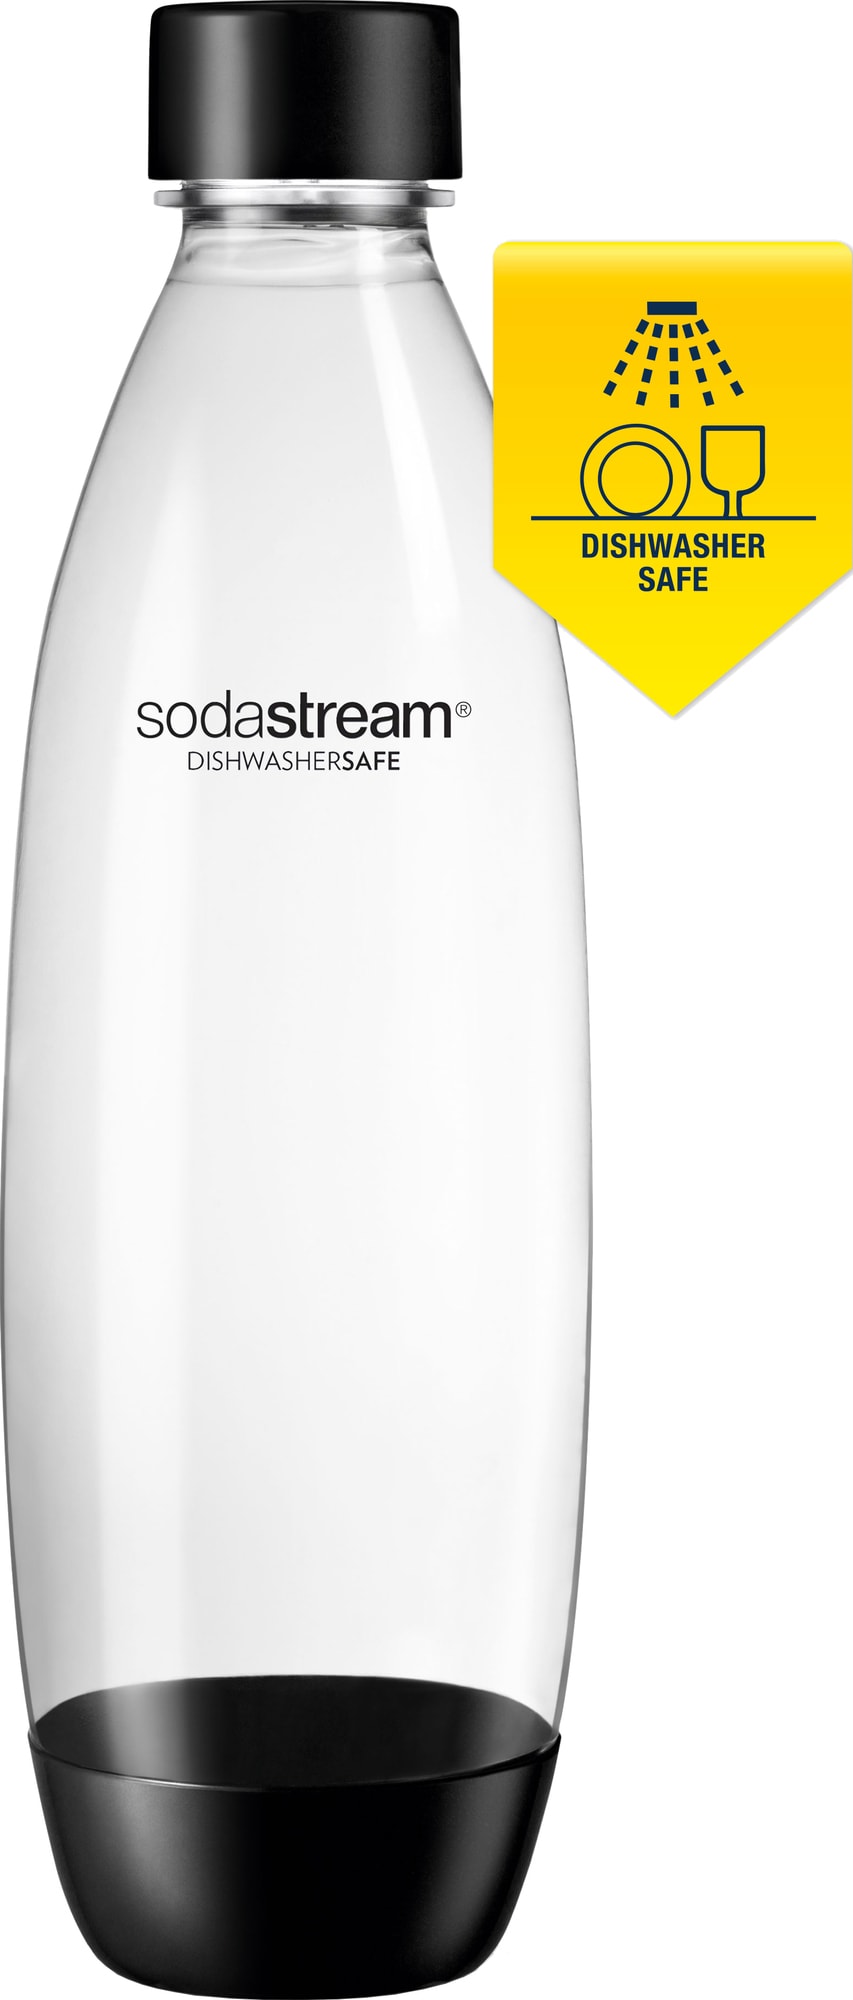 SodaStream Fuse flaske S1741124770 (Pepsi Max) - Elkjøp